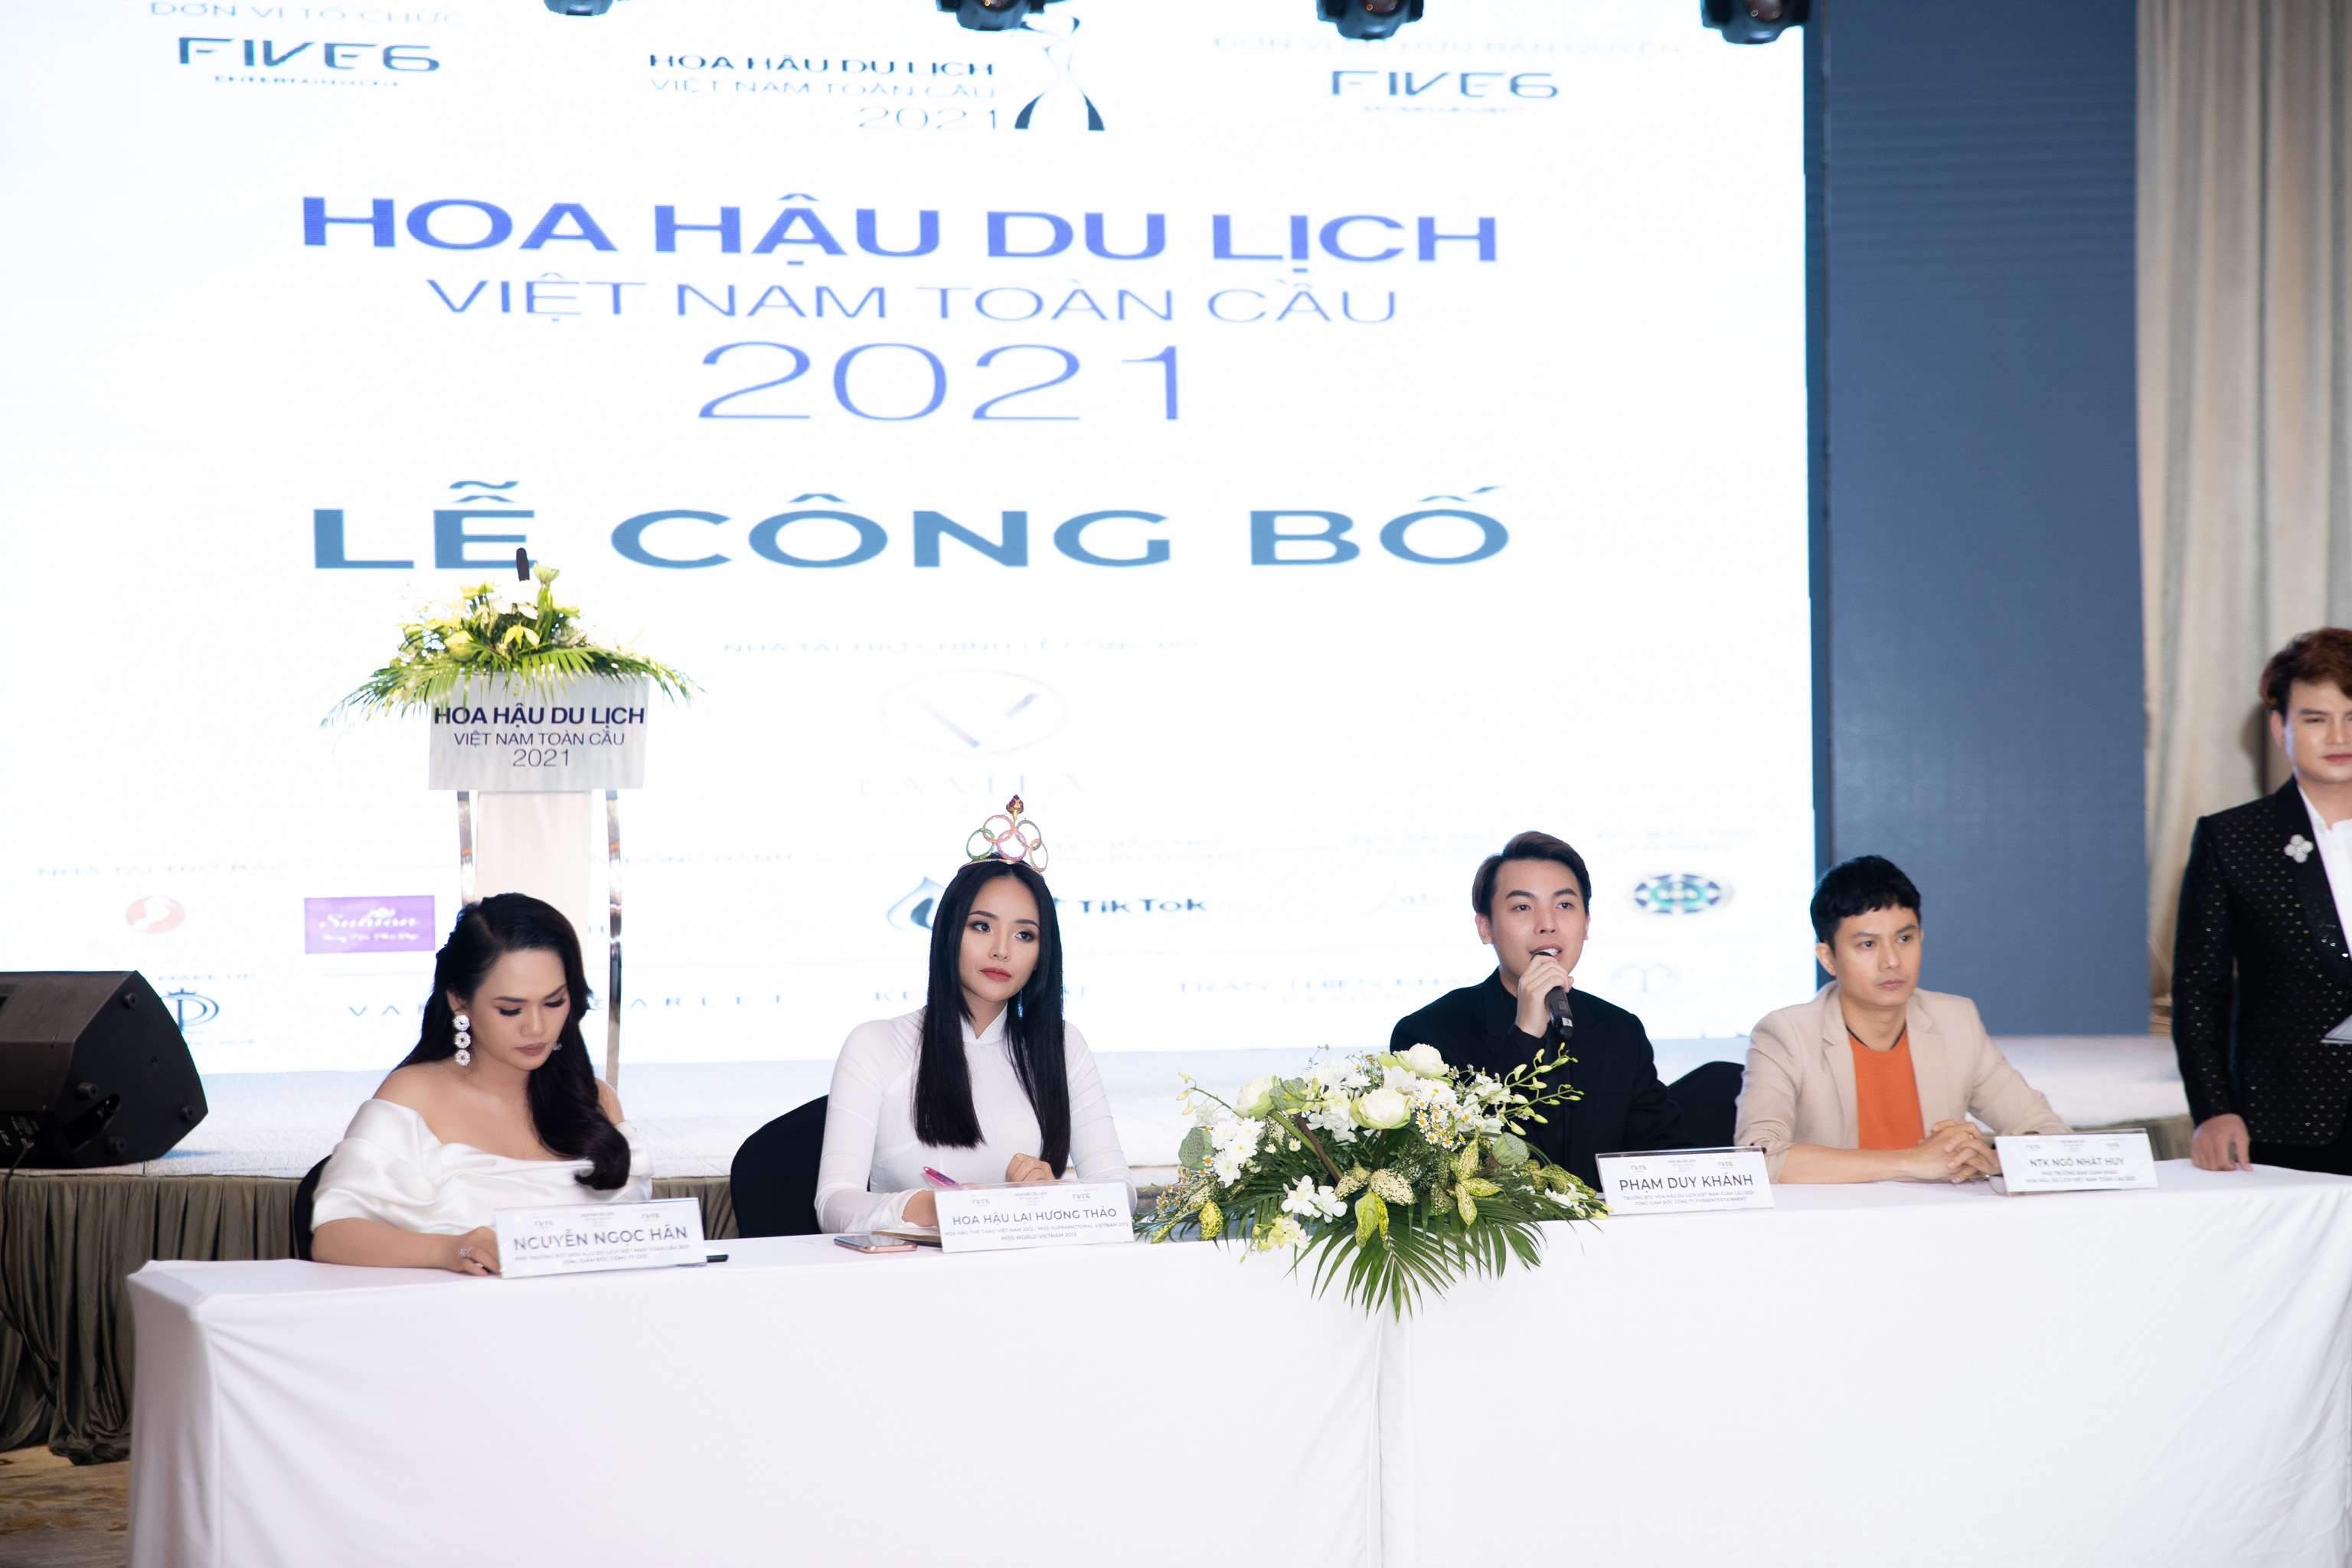 Hoa hậu Du lịch Việt Nam toàn cầu 2021 tổ chức tuyển sinh online vì Covid-19 - ảnh 3